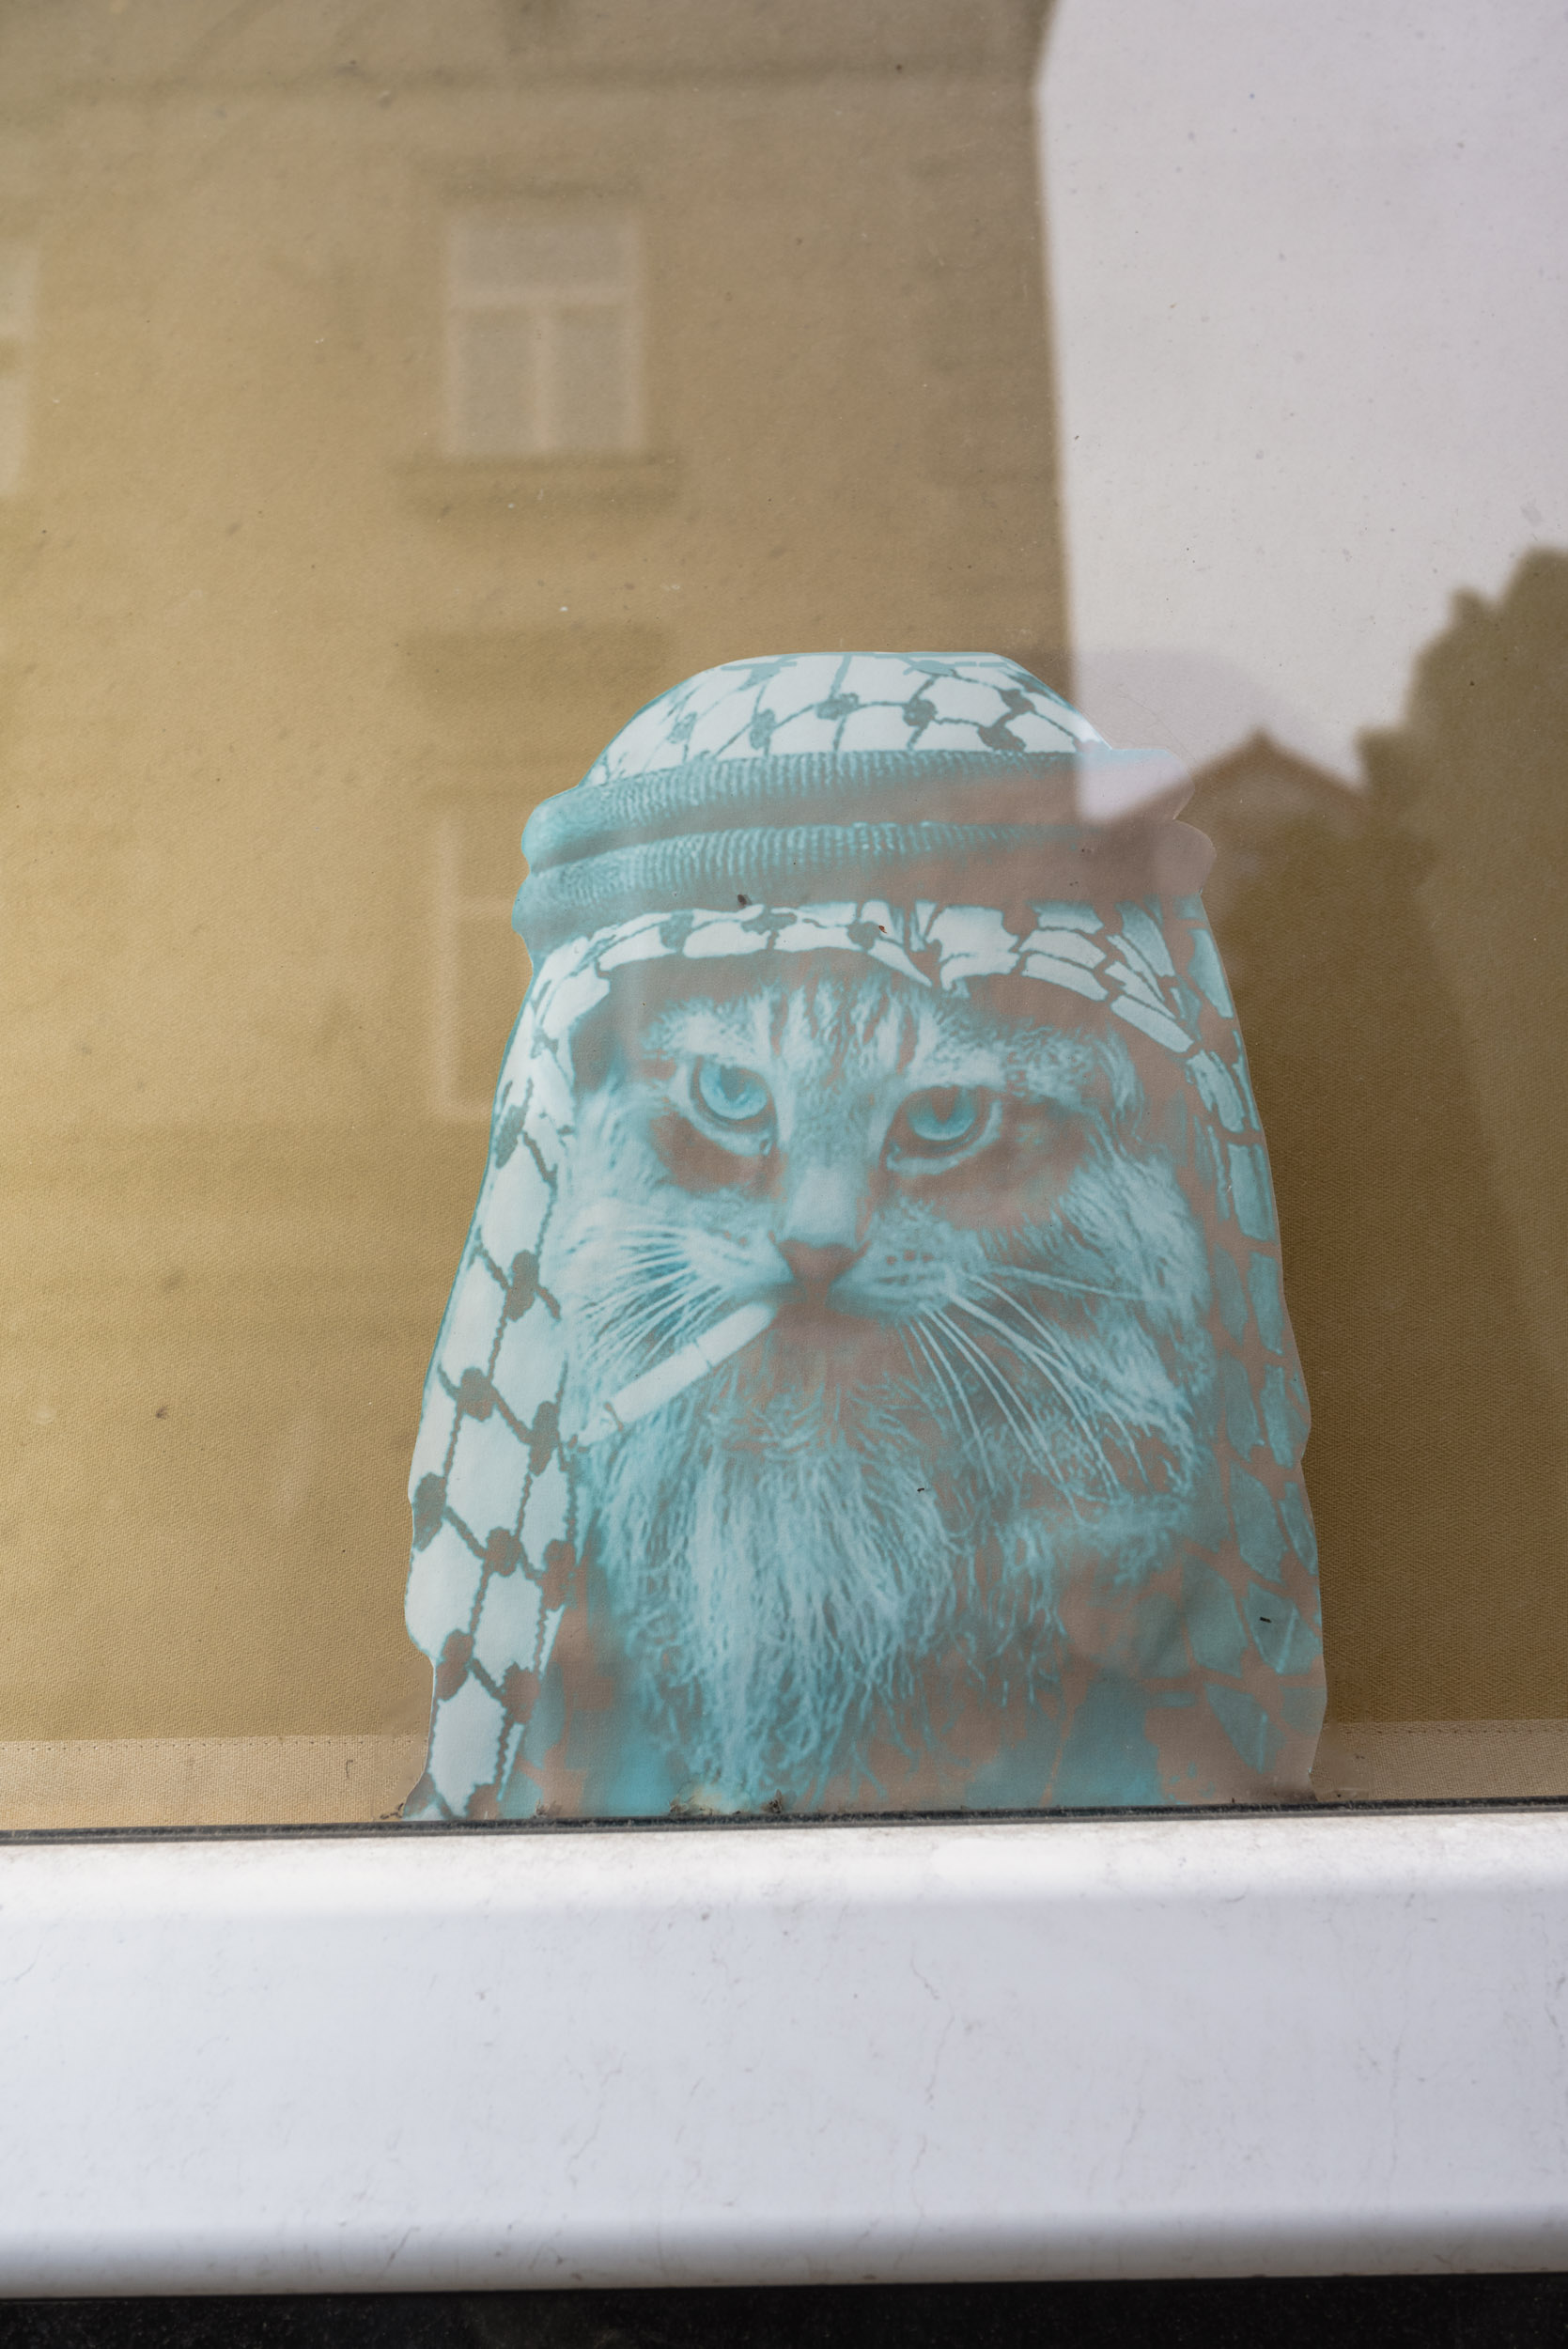 Rastafarian cat sticker in window